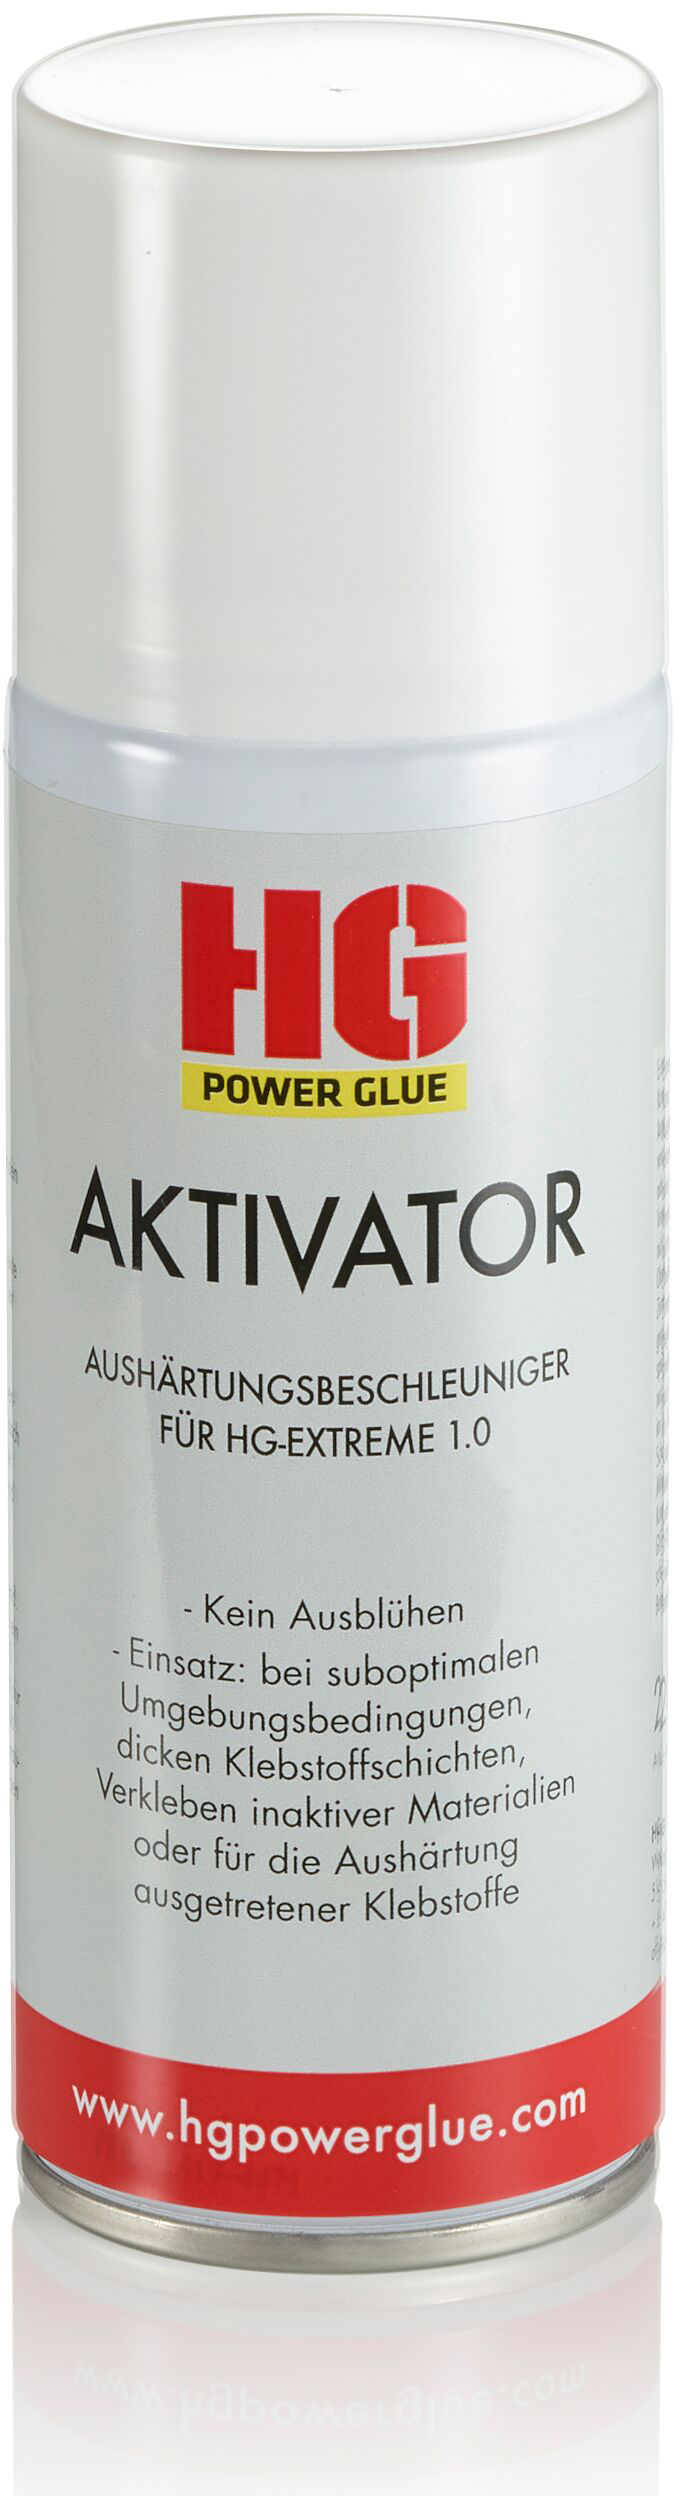 HG POWERGLUE Aktivator-Spray 200ml 400200 Aushärtungsbeschleuniger